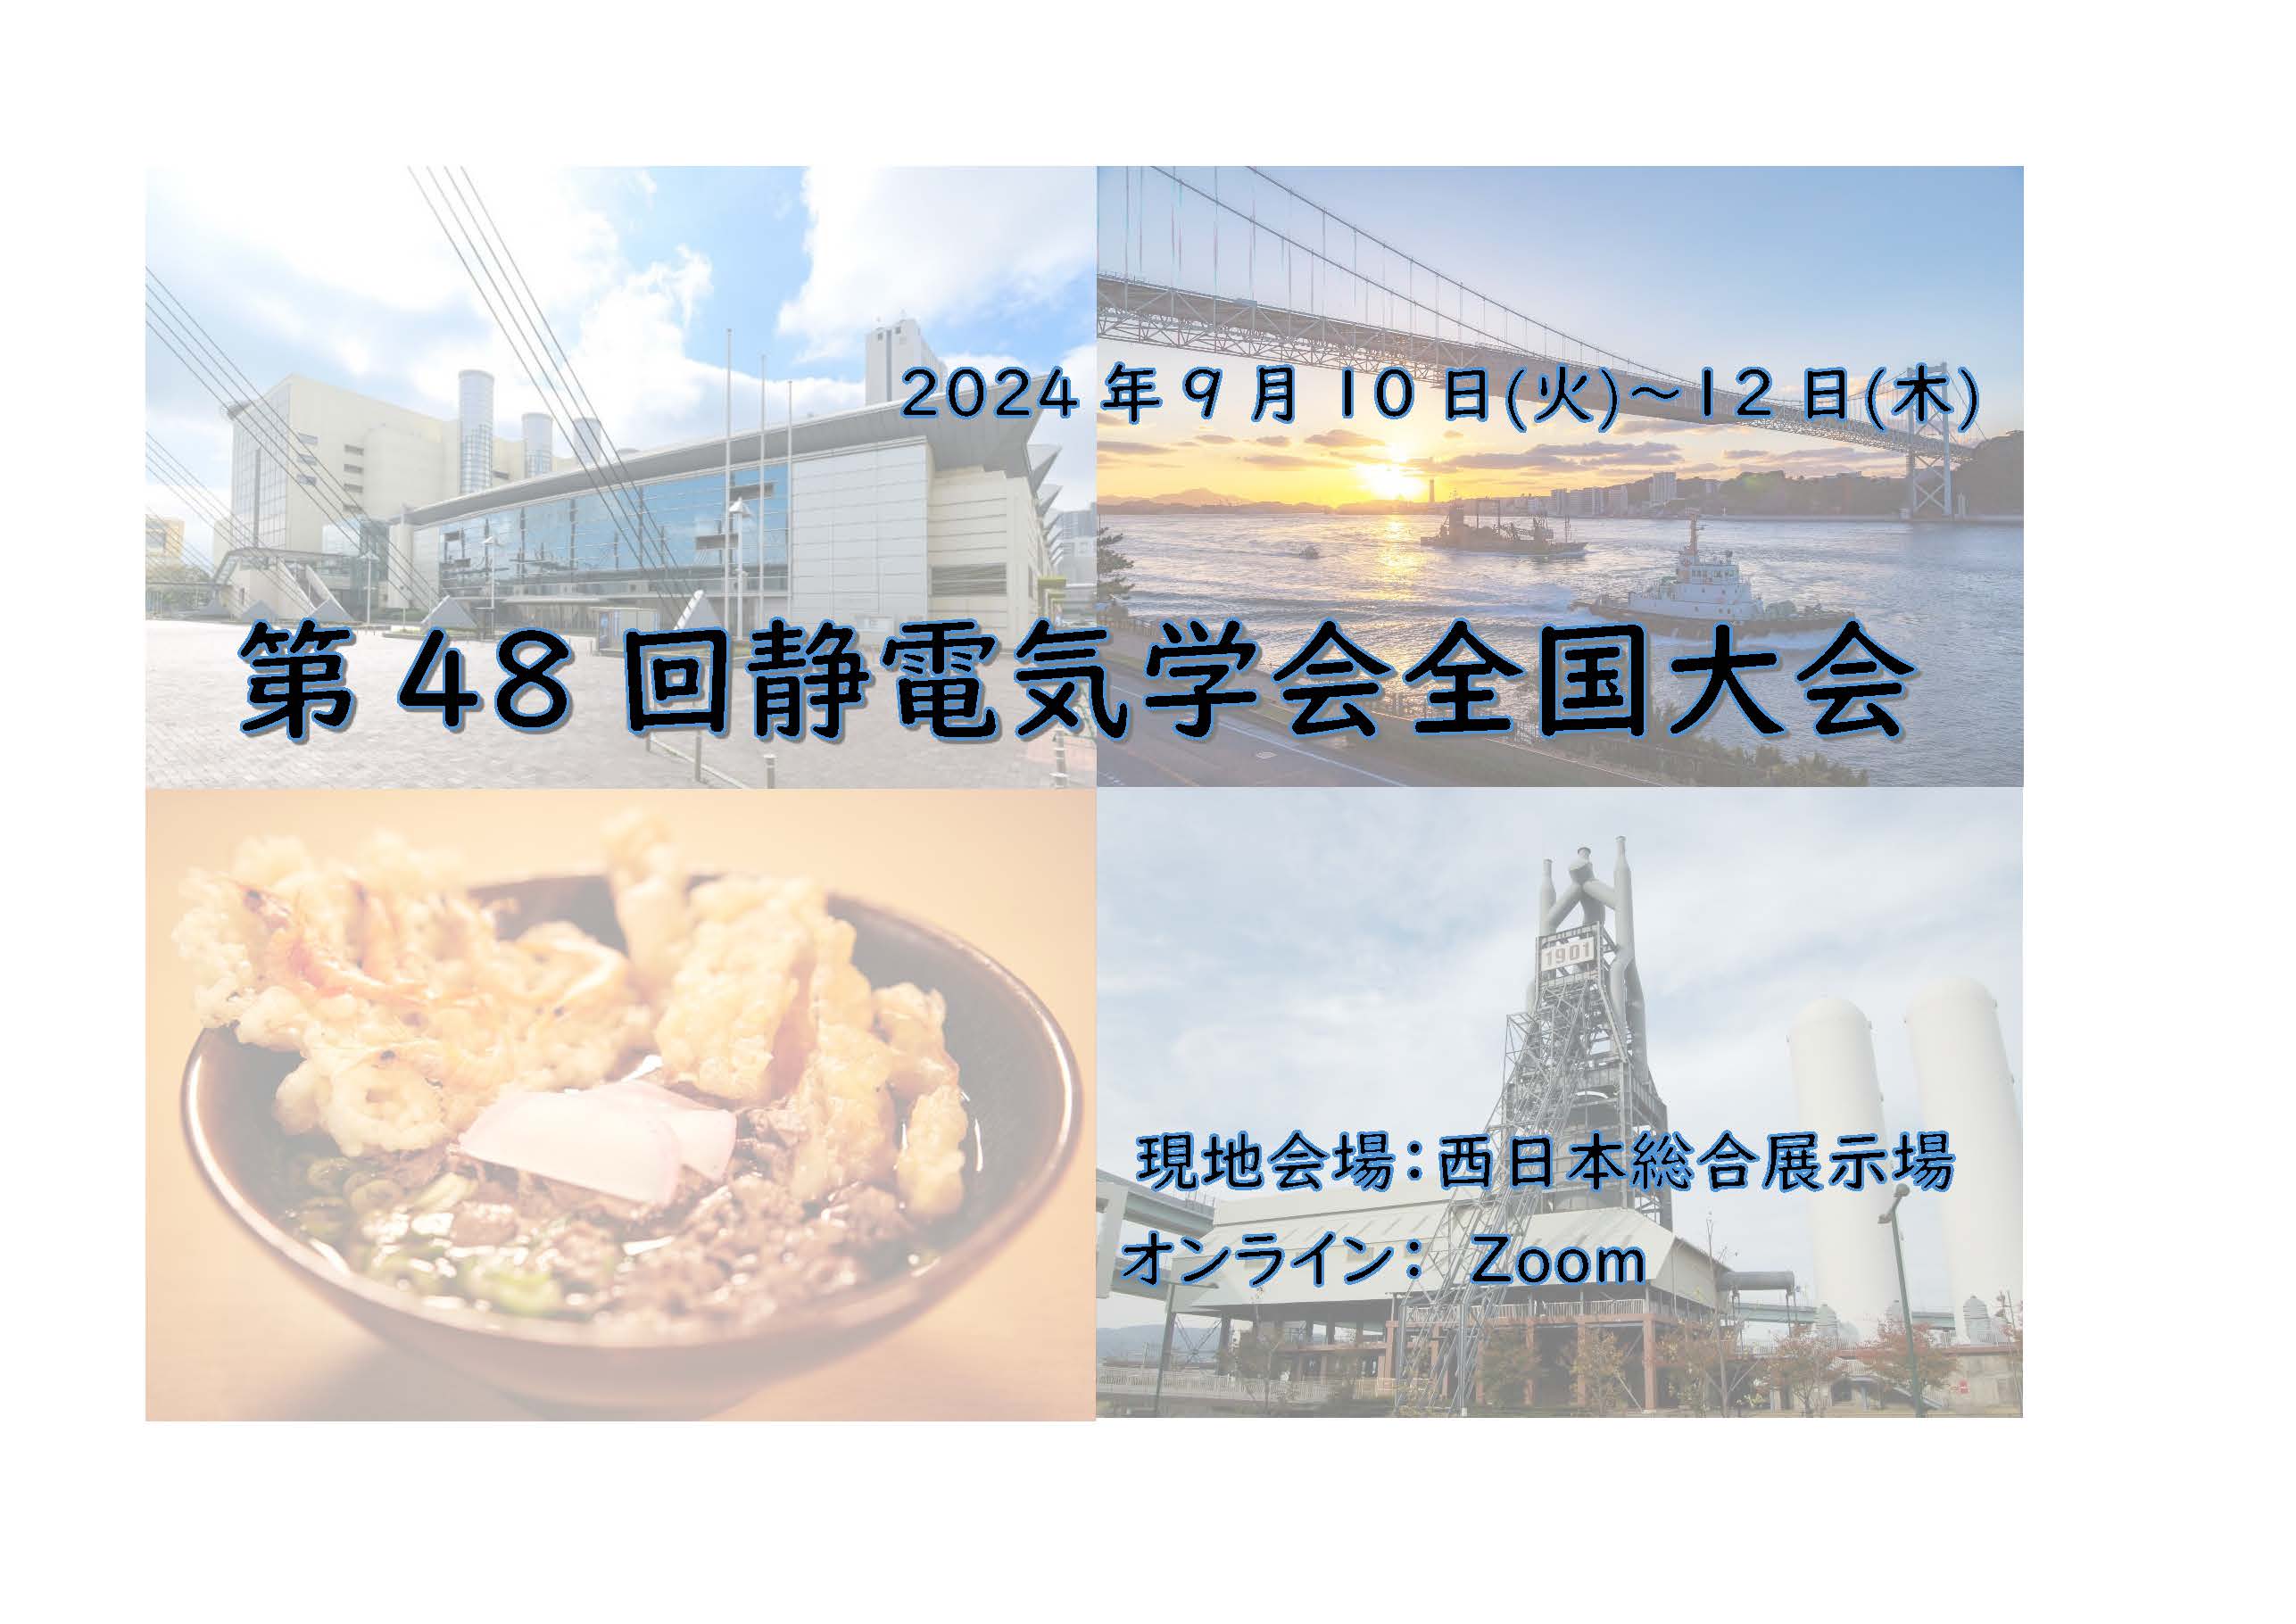 2023/9/10-12　西日本総合展示場およびzoom